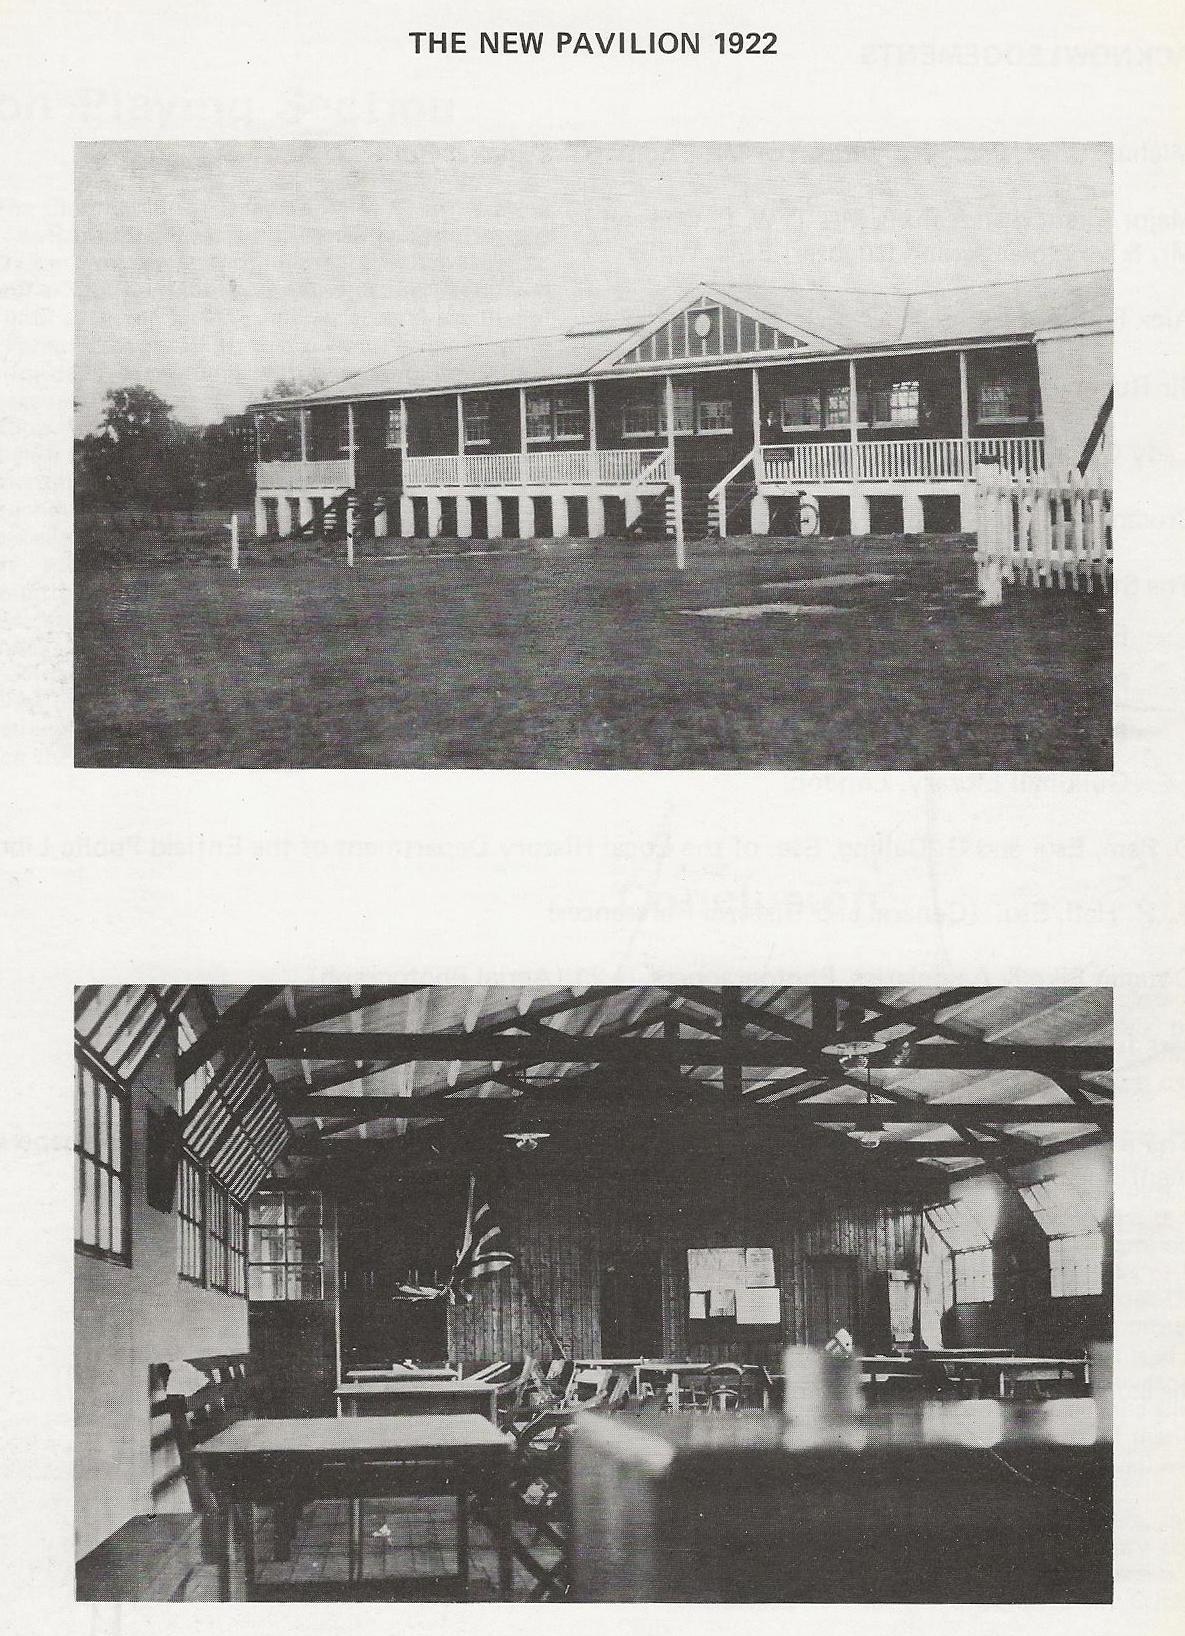 1922 pavilion